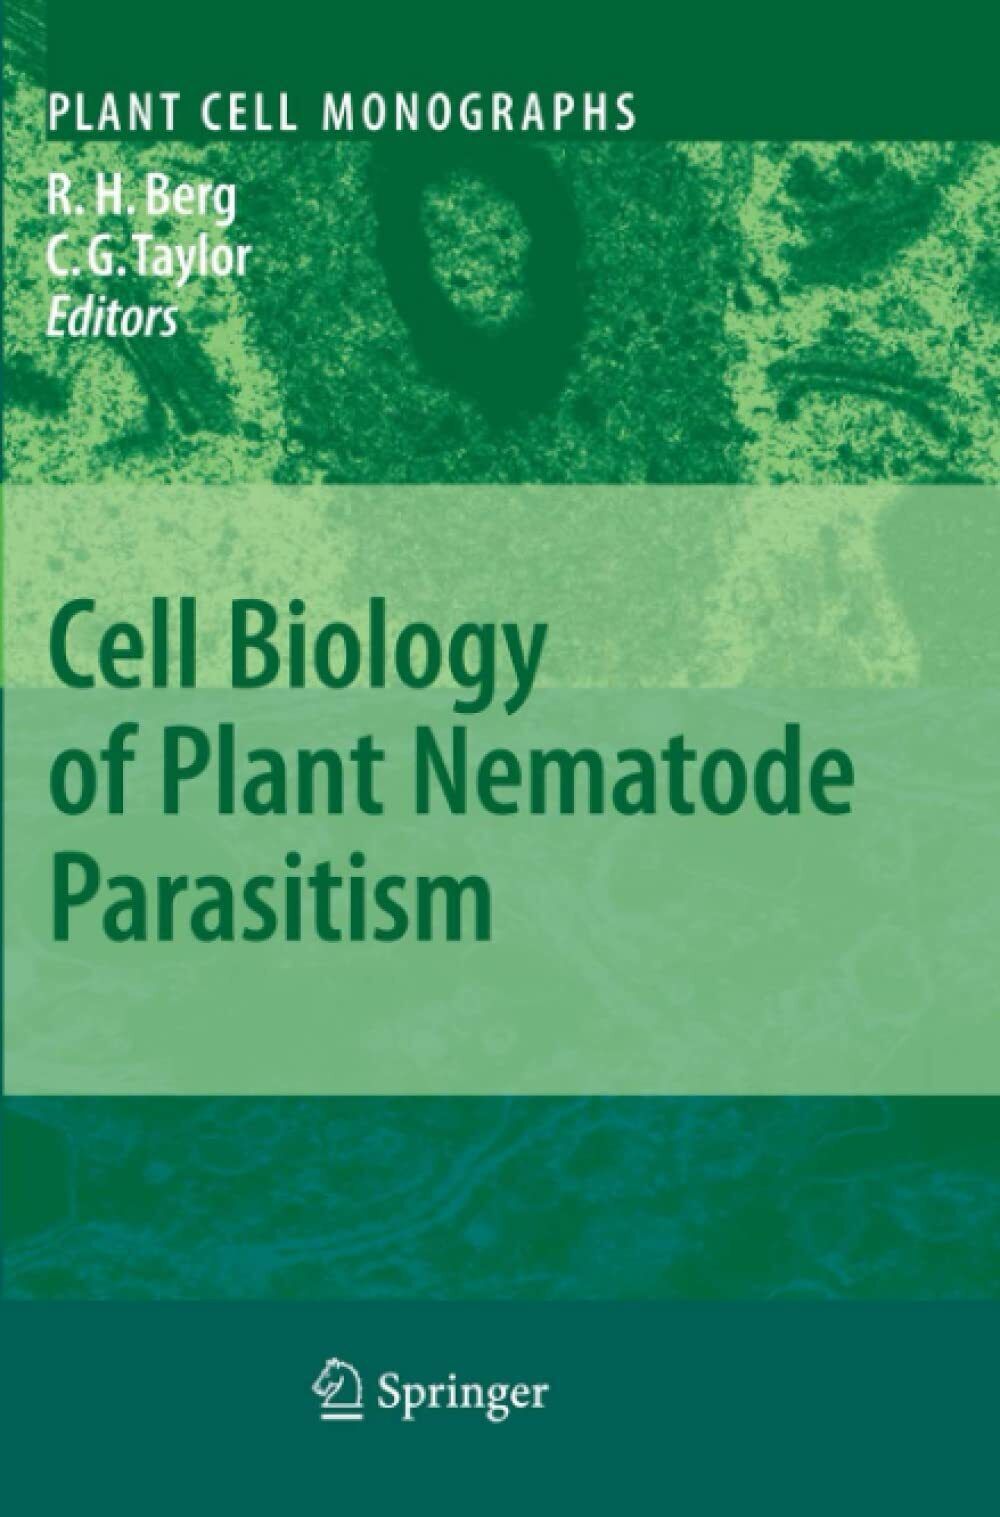 Cell Biology of Plant Nematode Parasitism - R. Howard Berg - Springer, 2010